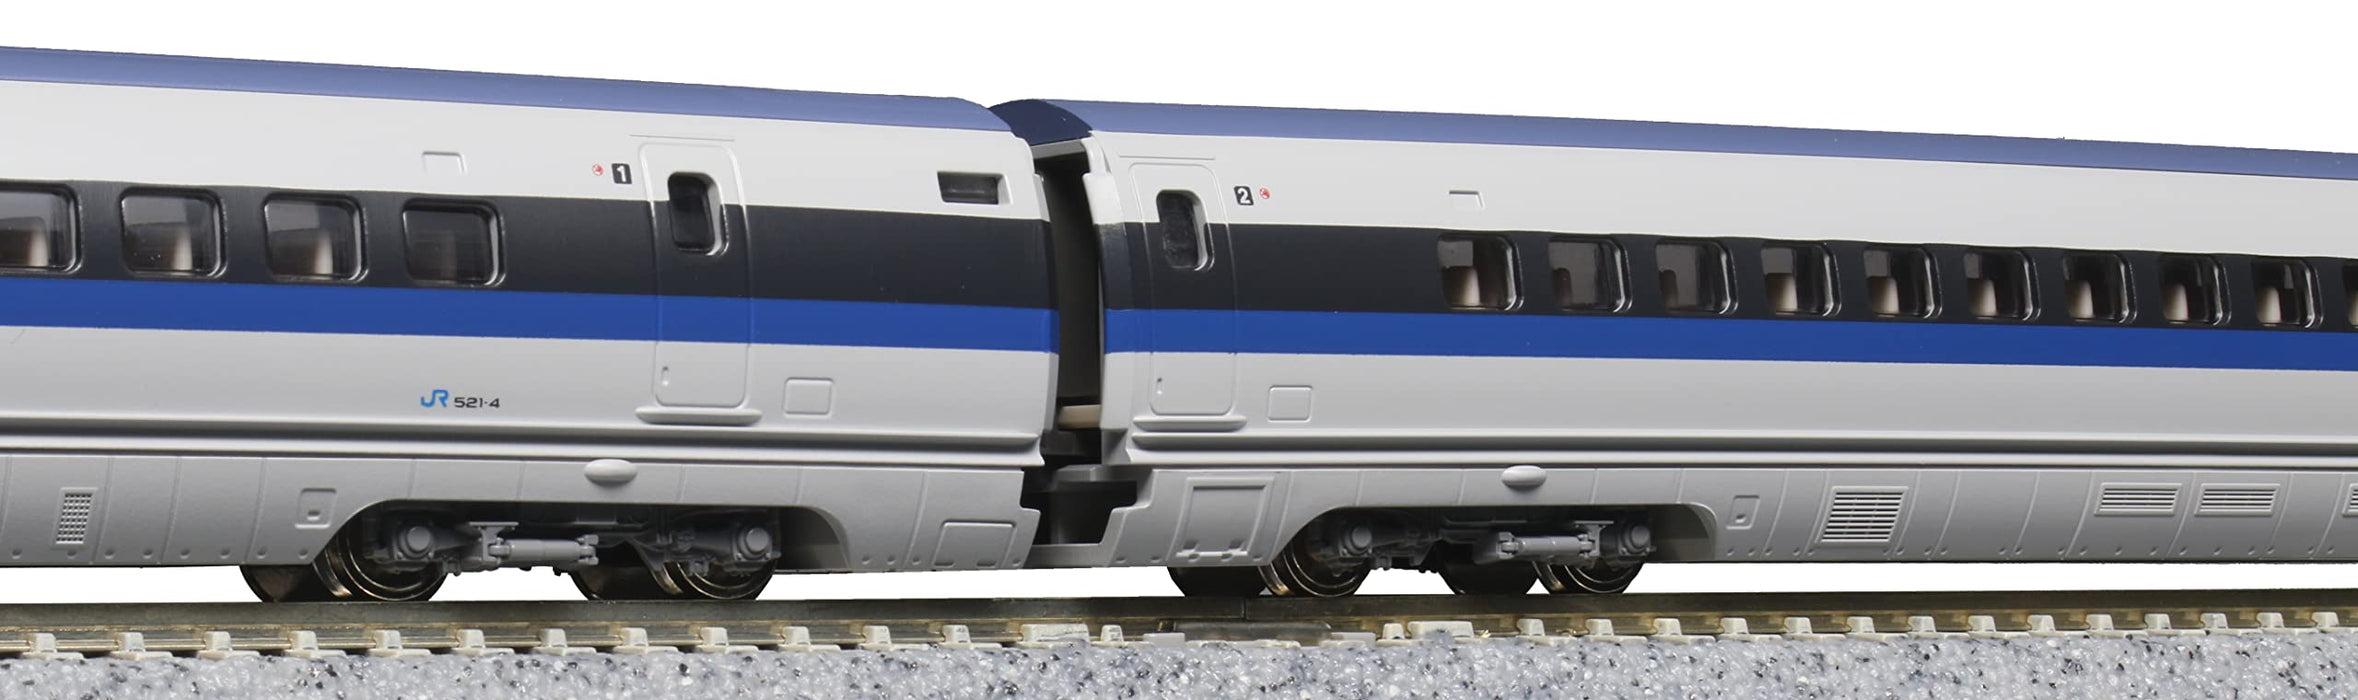 KATO 10-1795 N Gauge 500 Series Shinkansen Nozomi 8-Car Expansion Set Railway_2